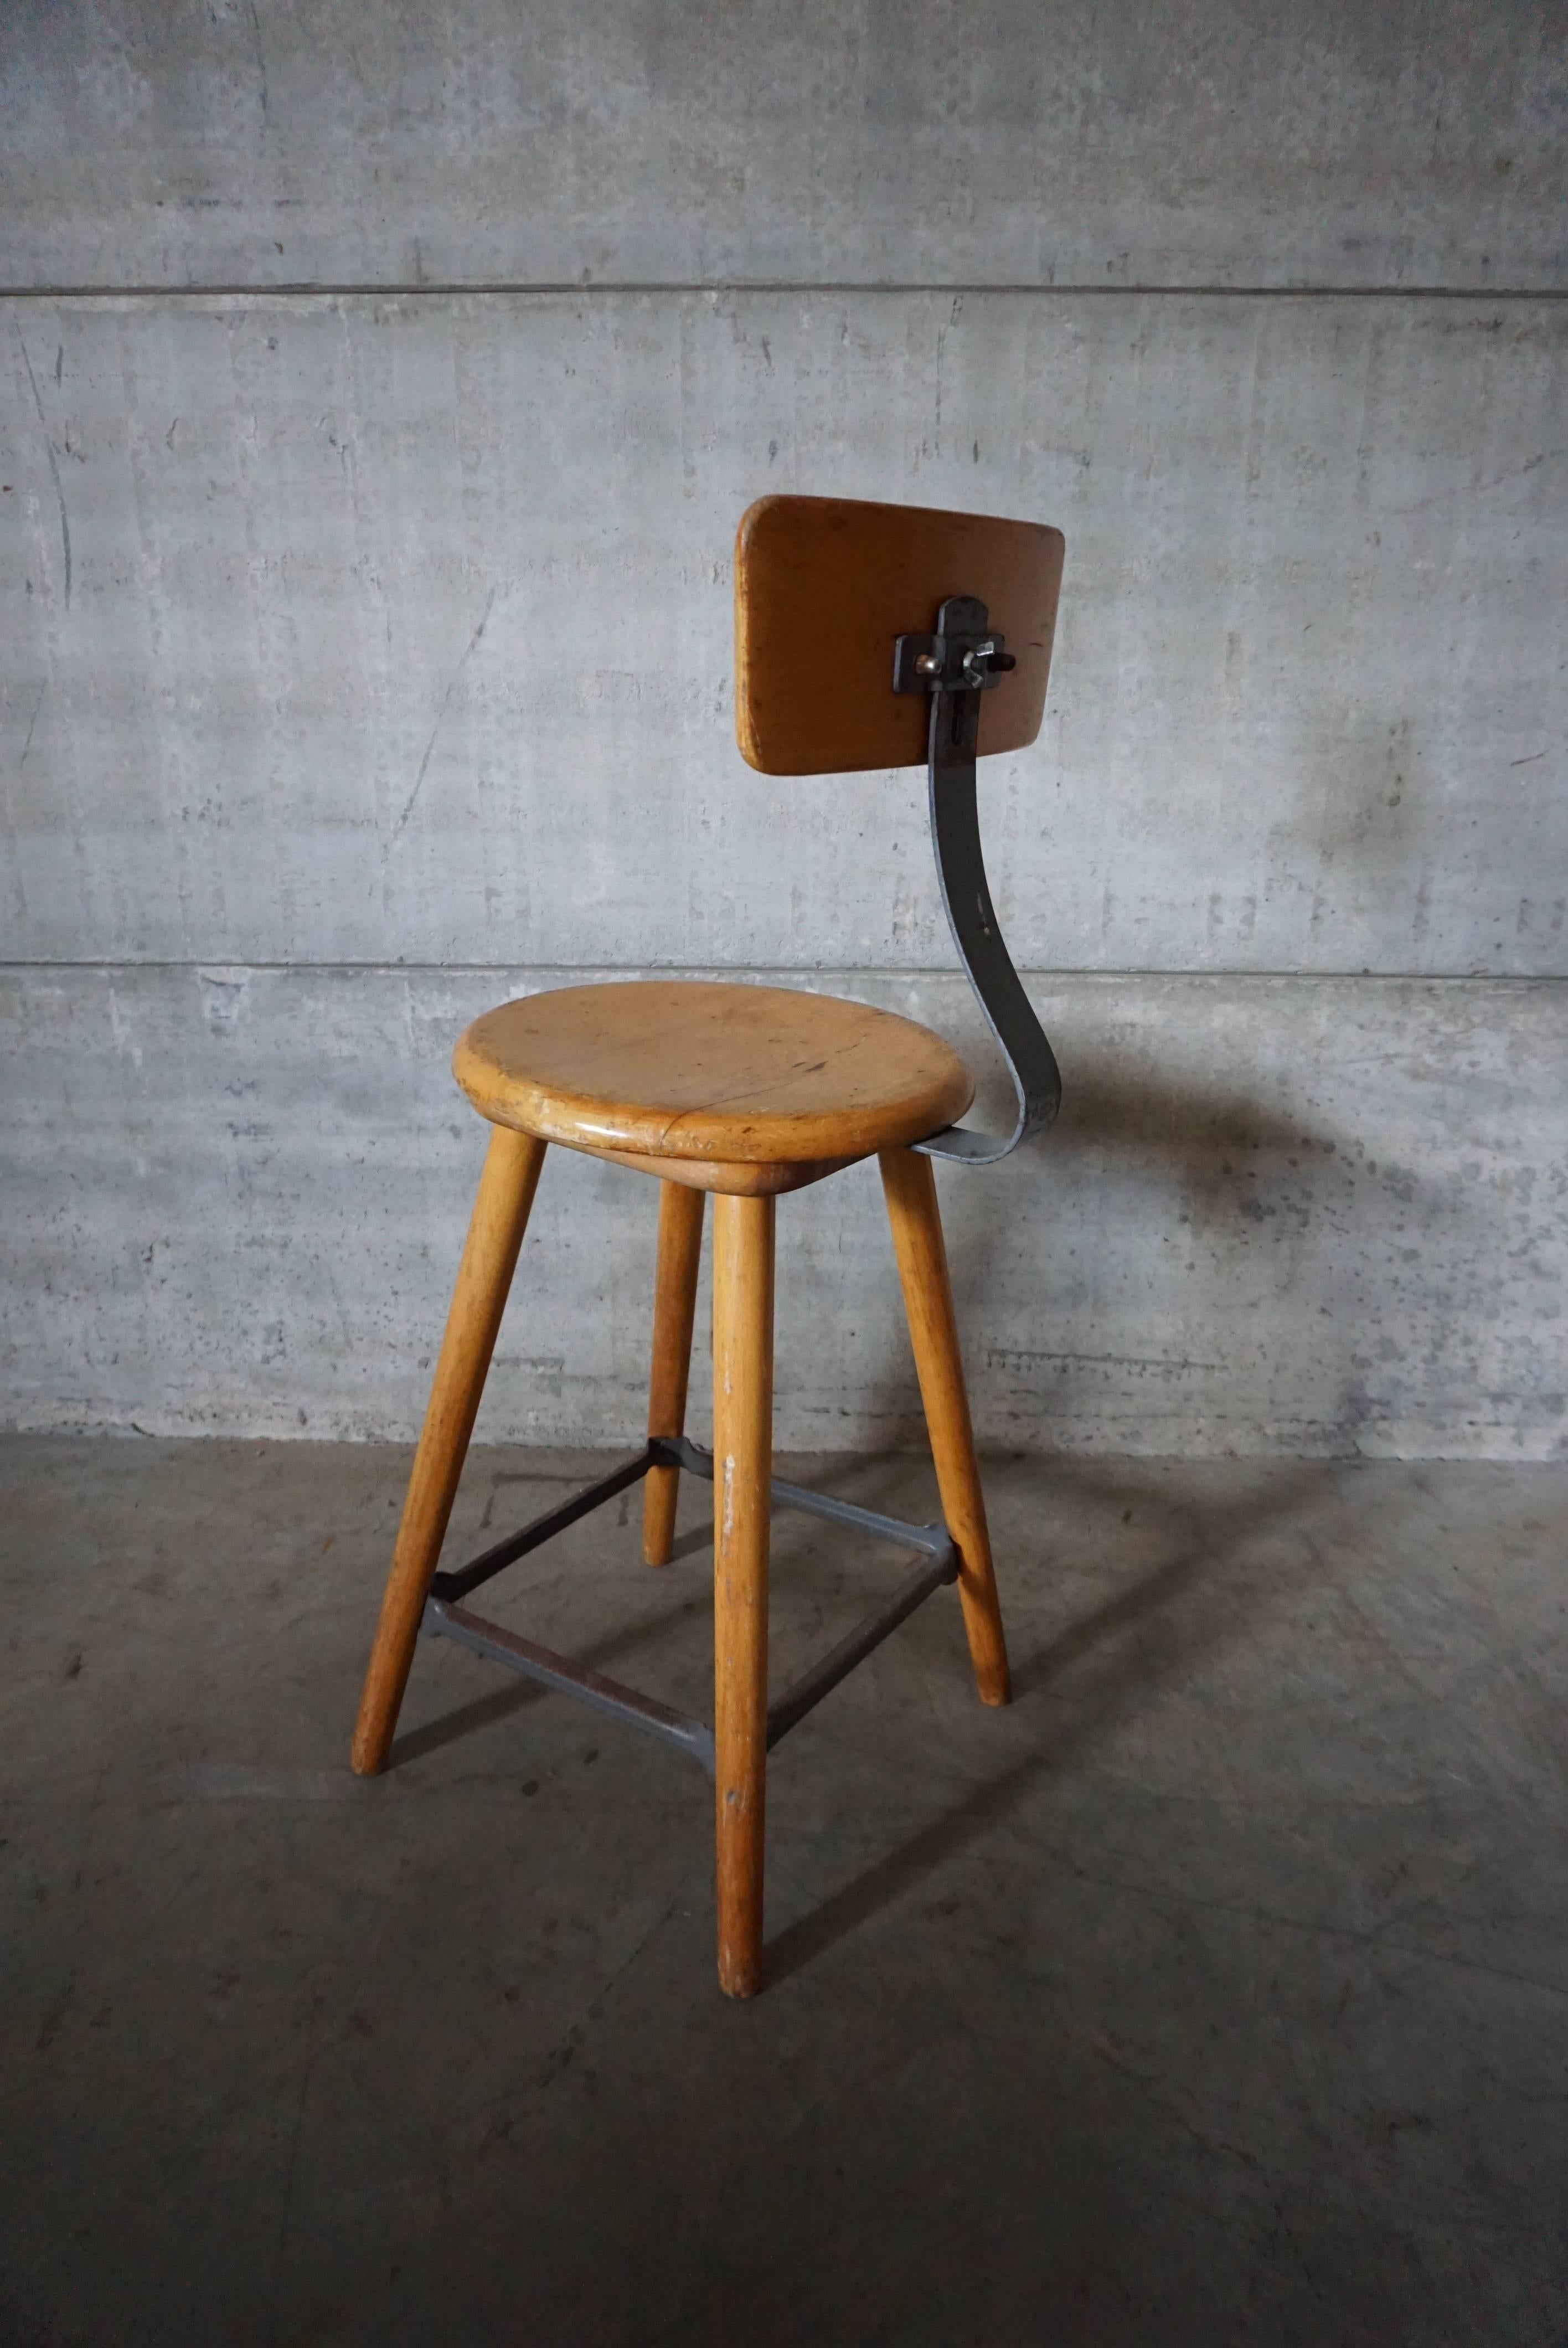 German Industrial Workshop Chair / Bar Stool 1